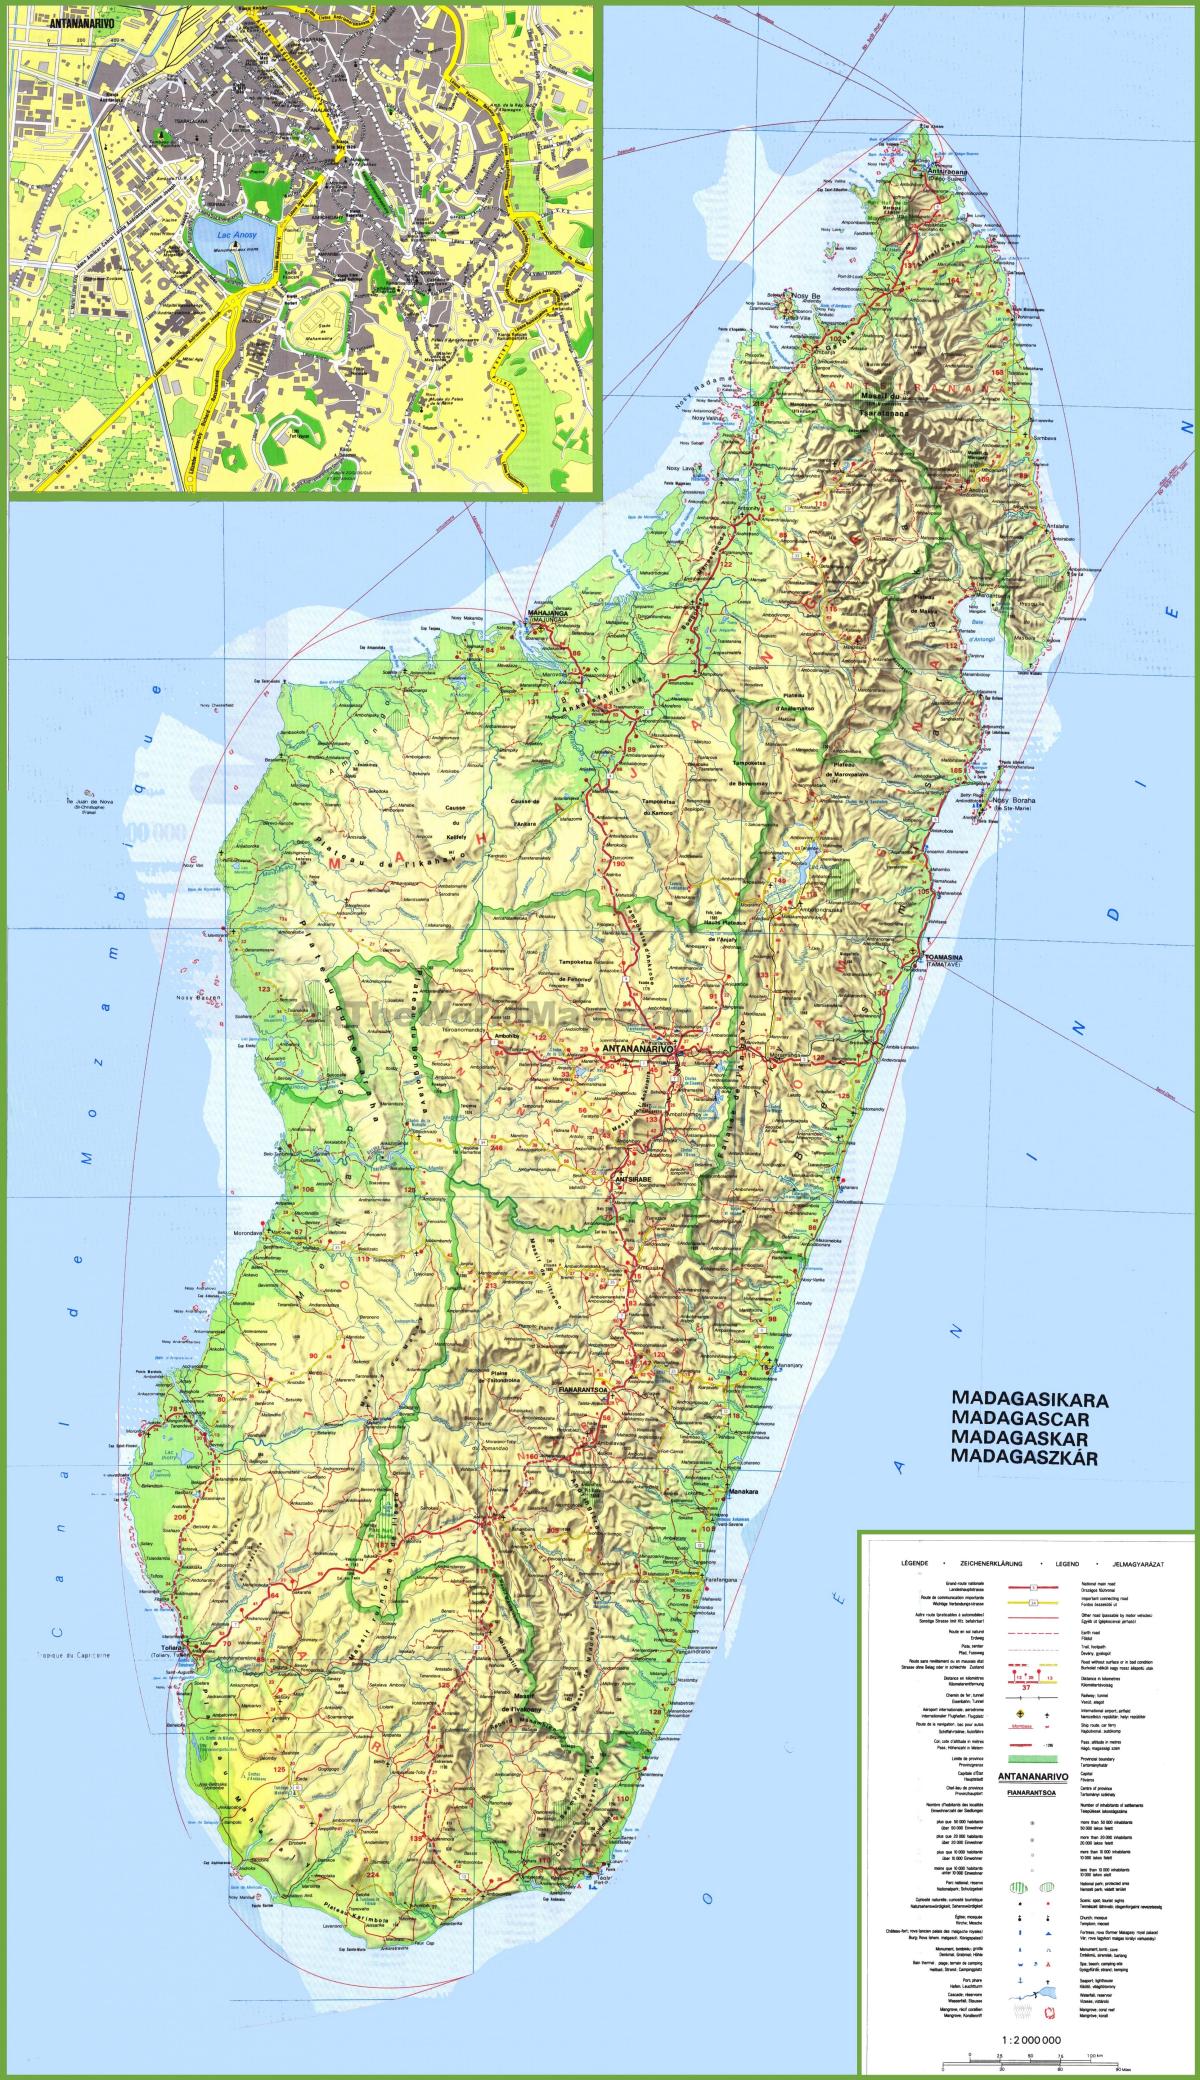 地图显示马达加斯加